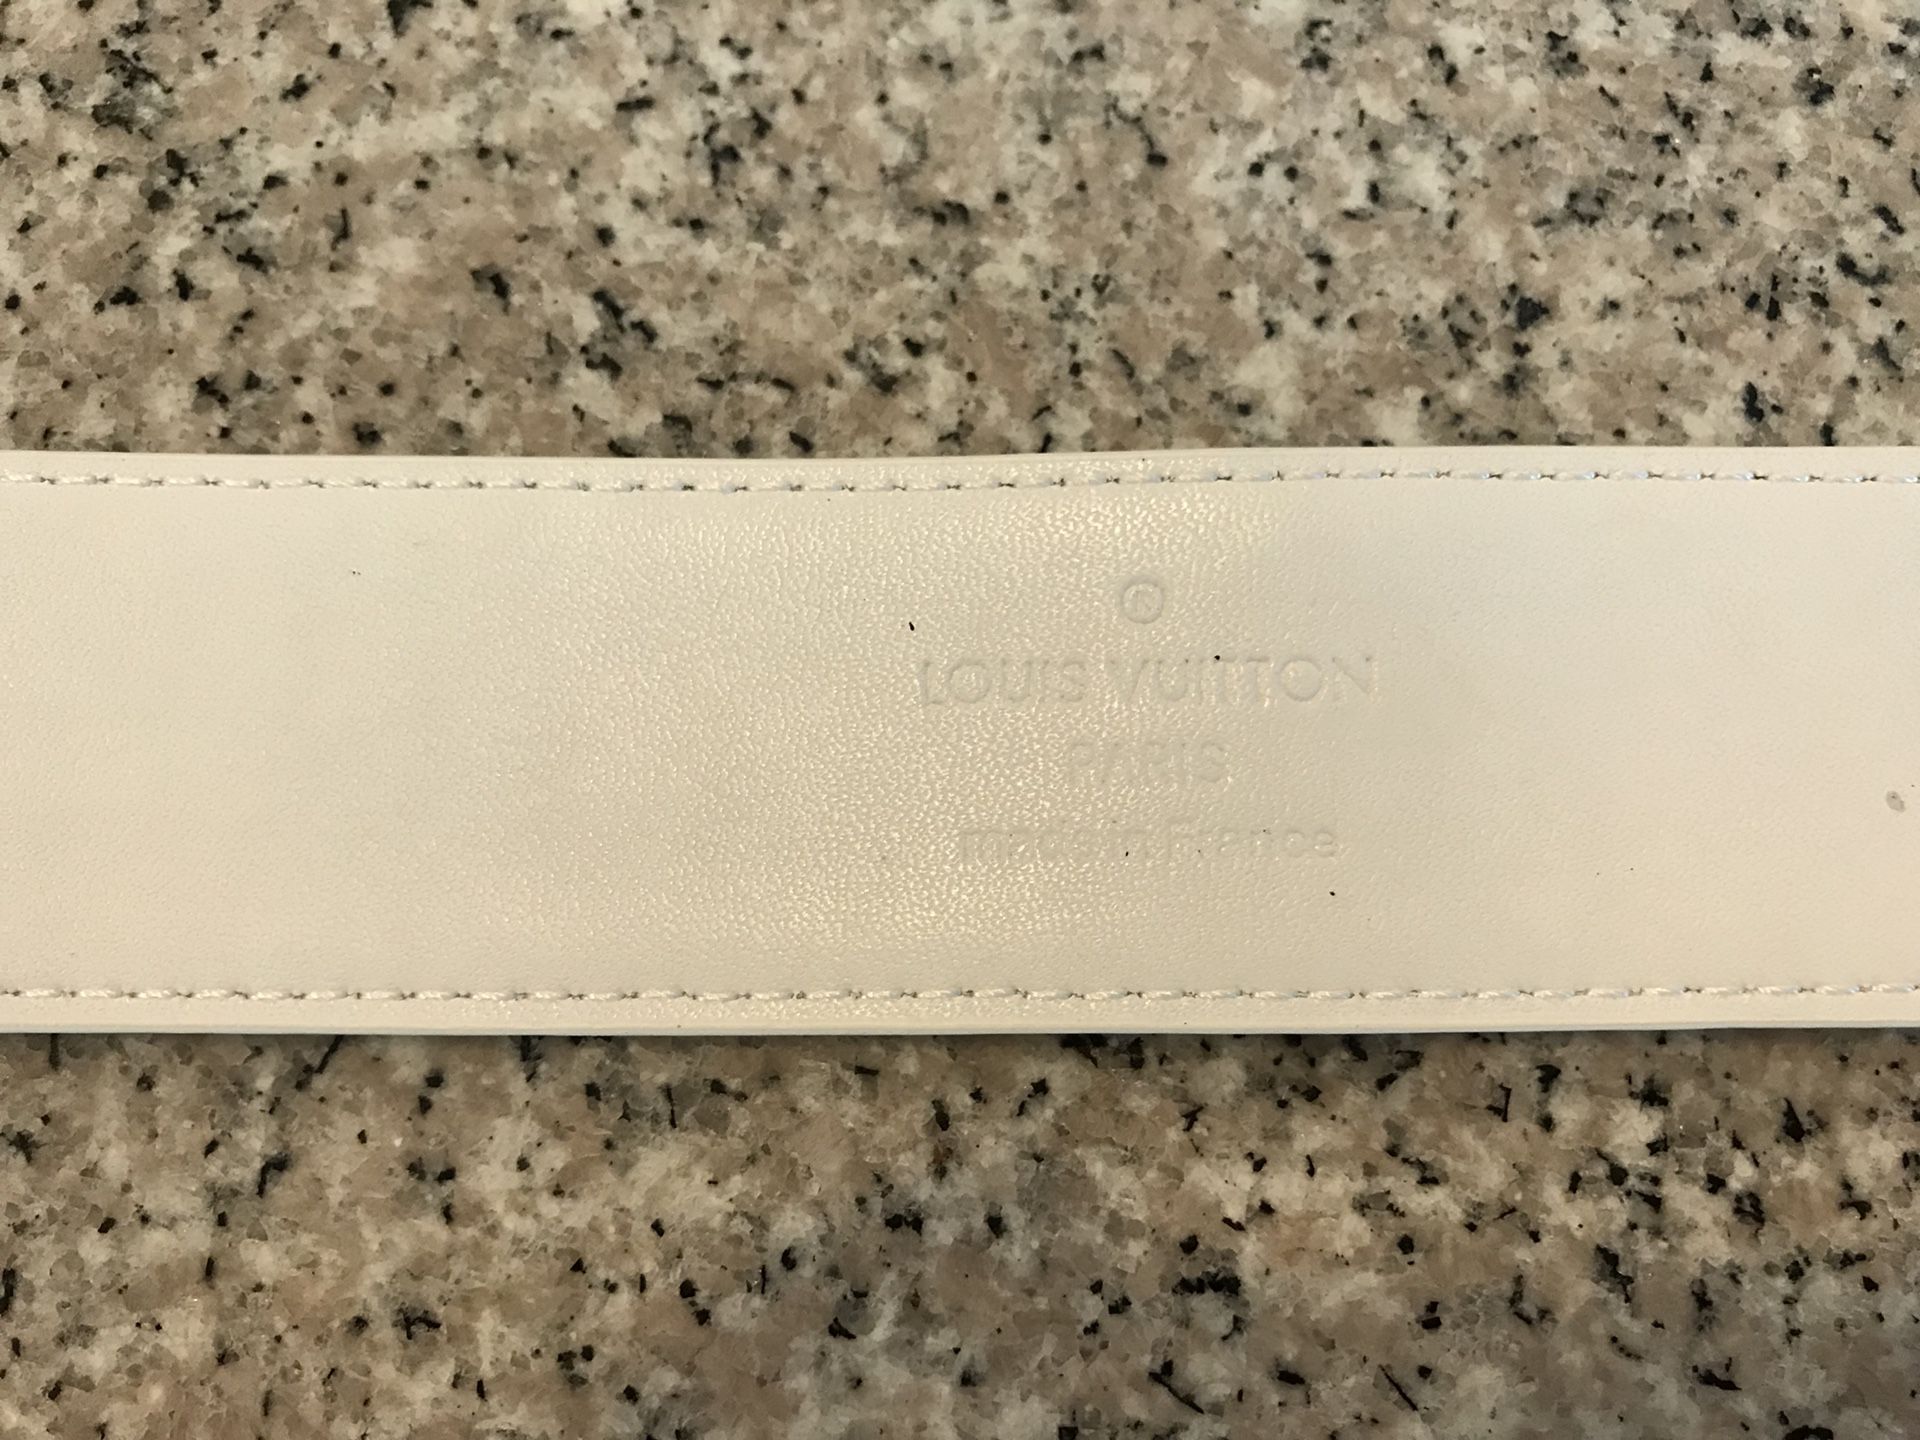 Louis Vuitton Lv Belt Size 32 Men Unisex for Sale in Las Vegas, NV